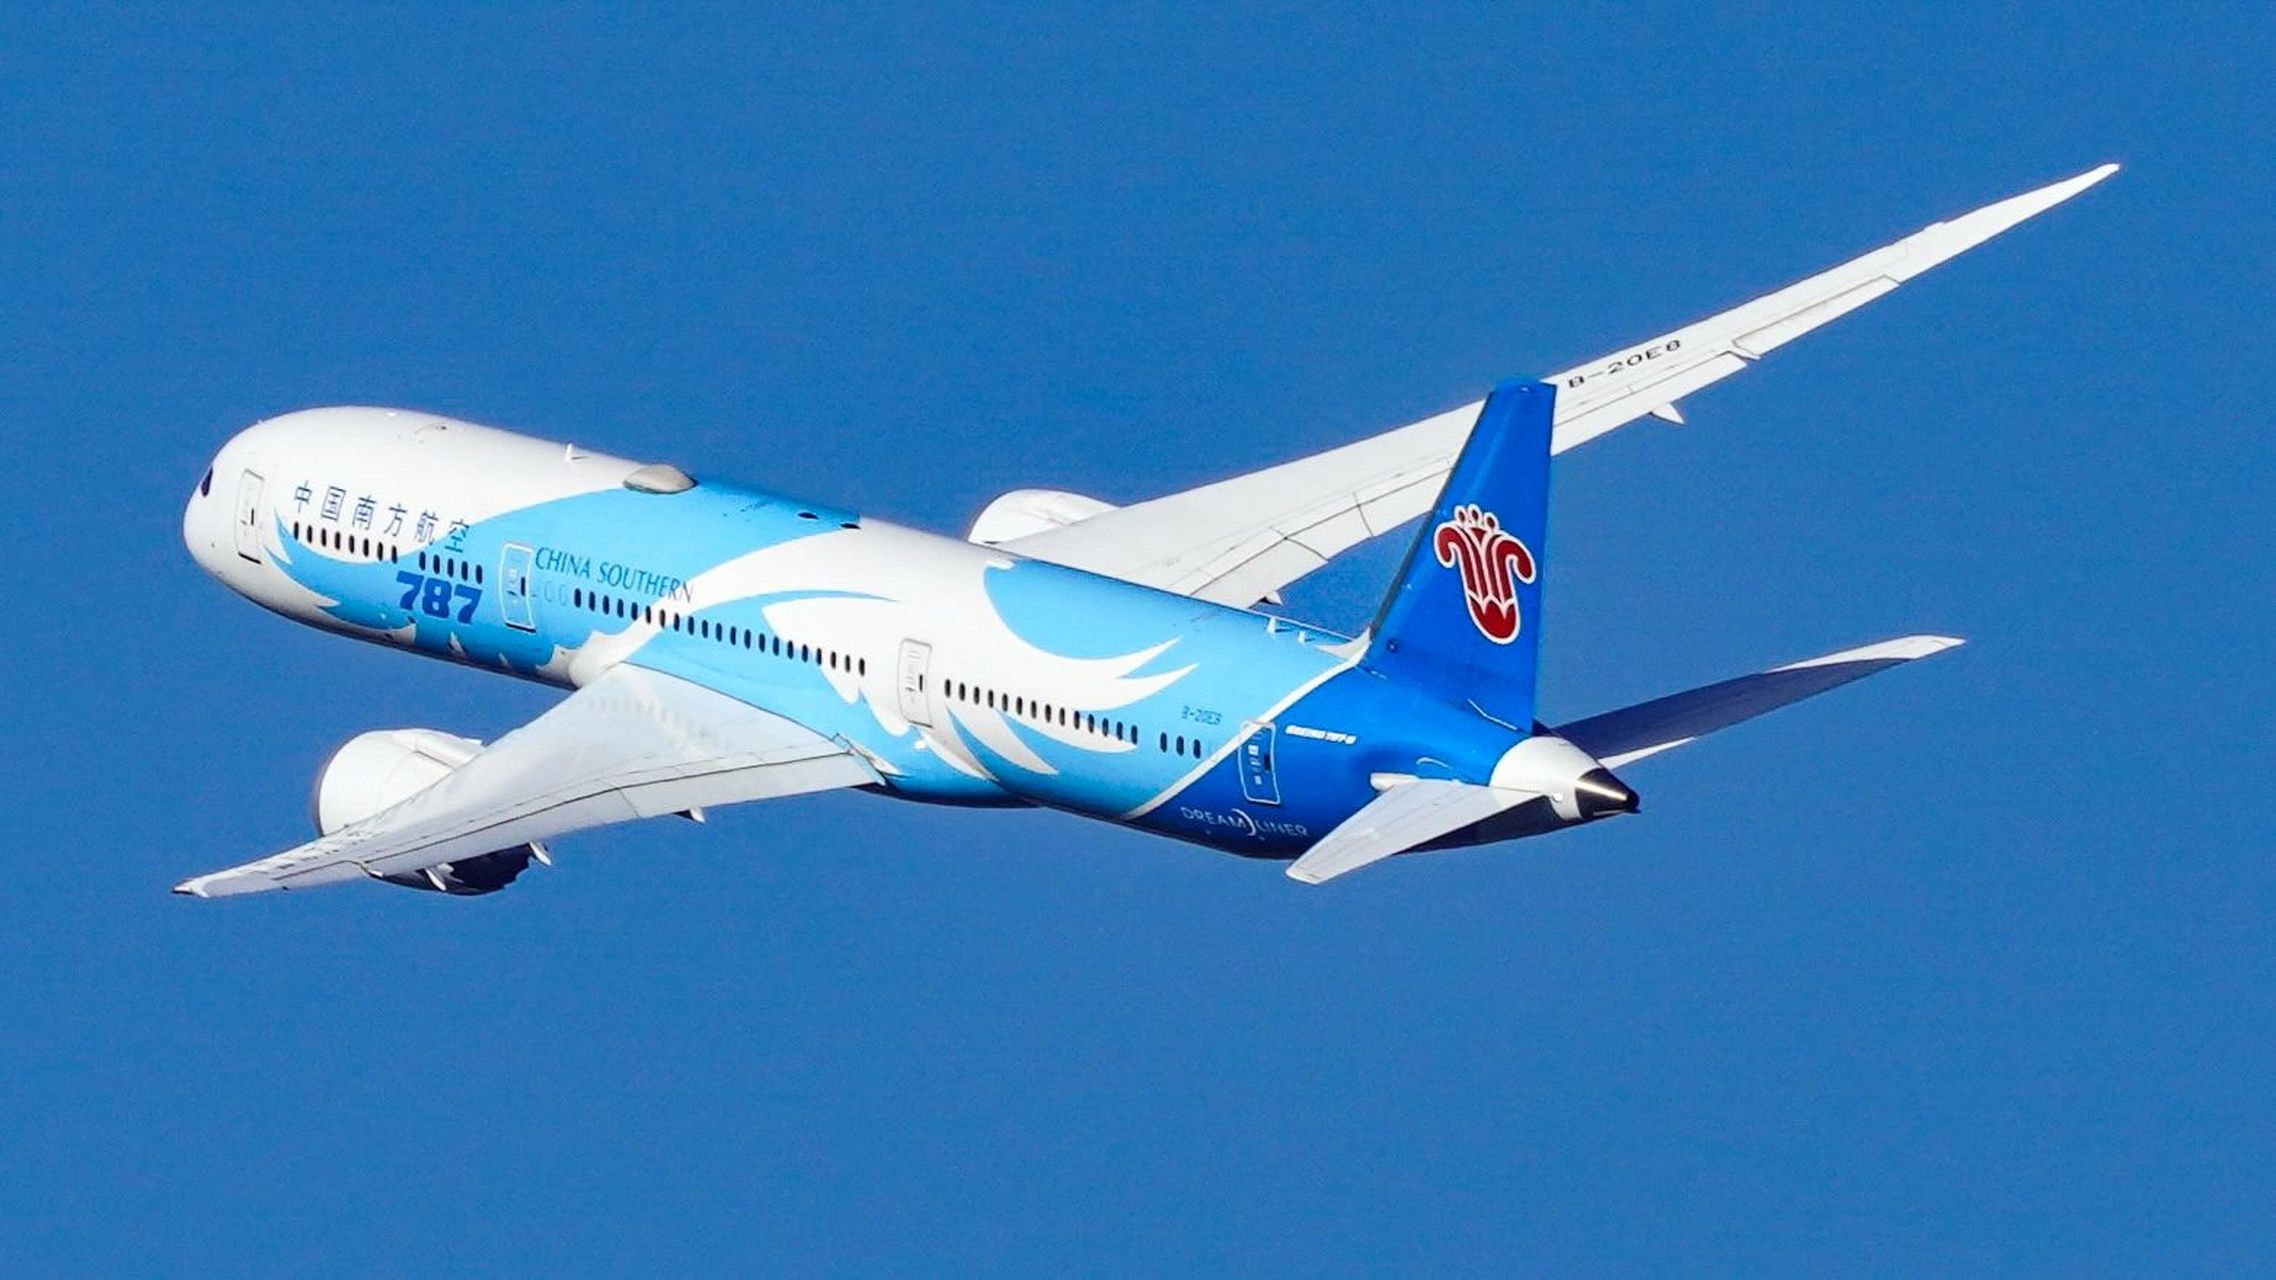 南航 波音787 vs 空客350 作为新一代中远程宽体客机 波音787和空客